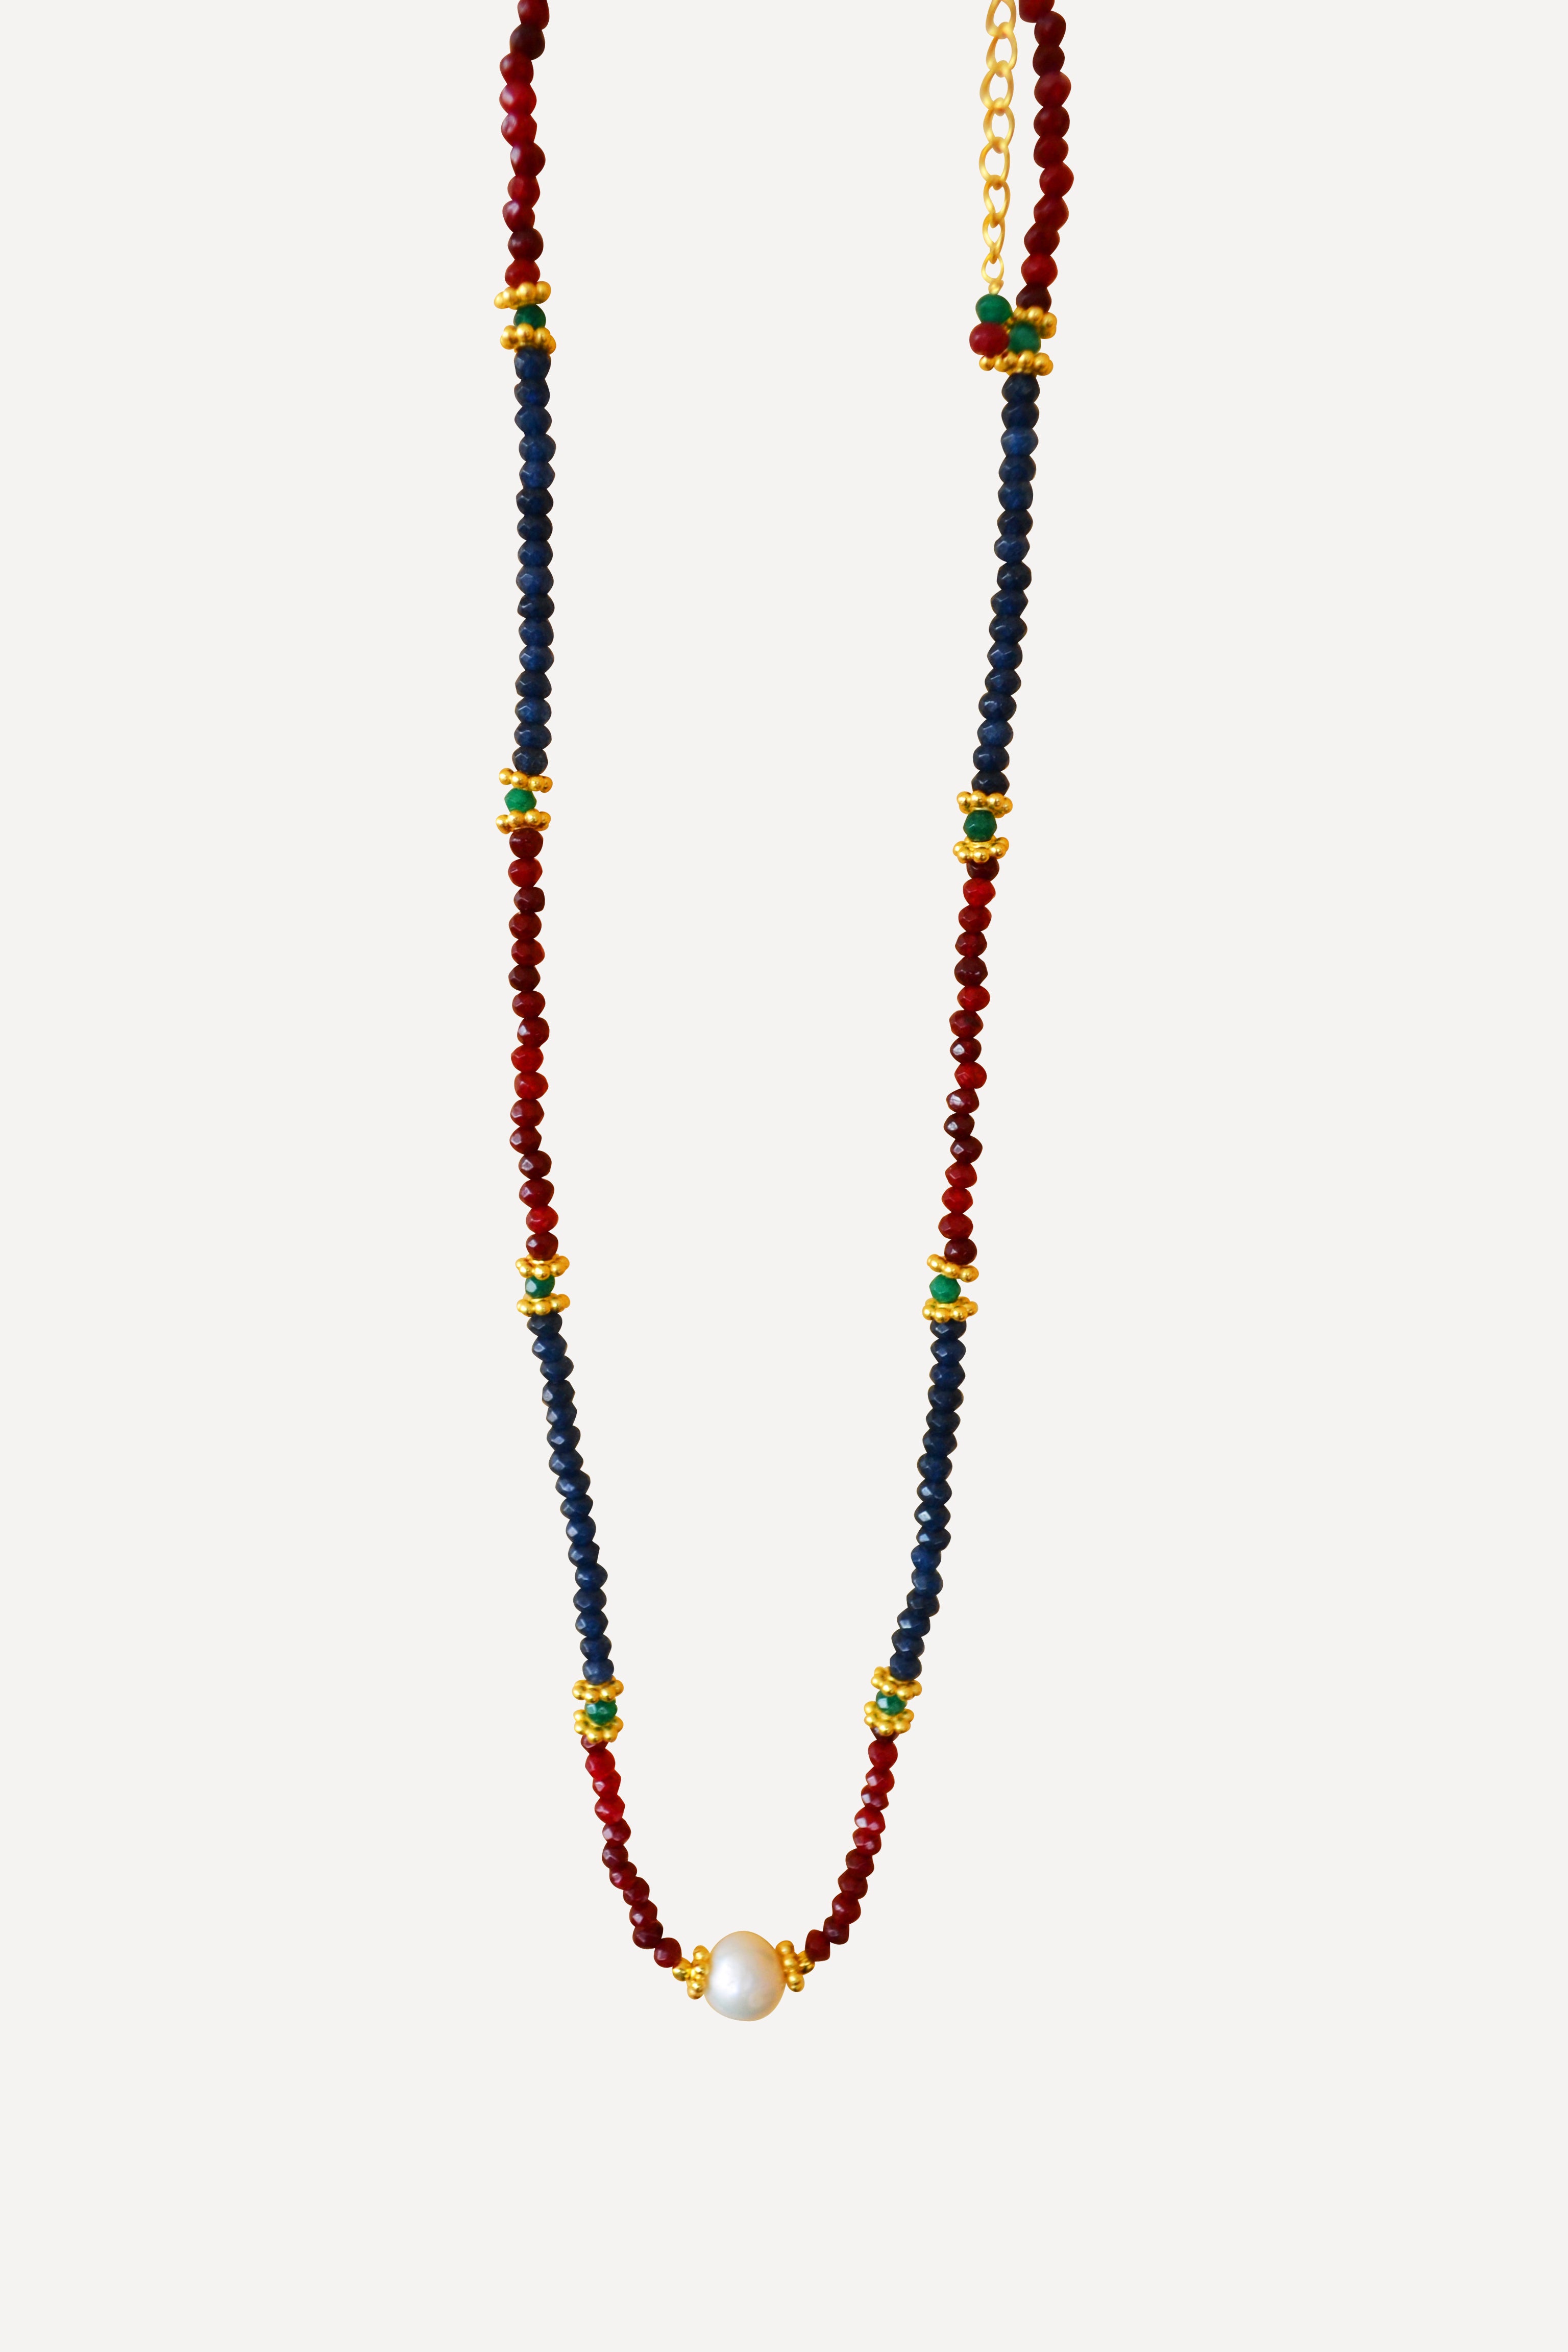 Junia necklace